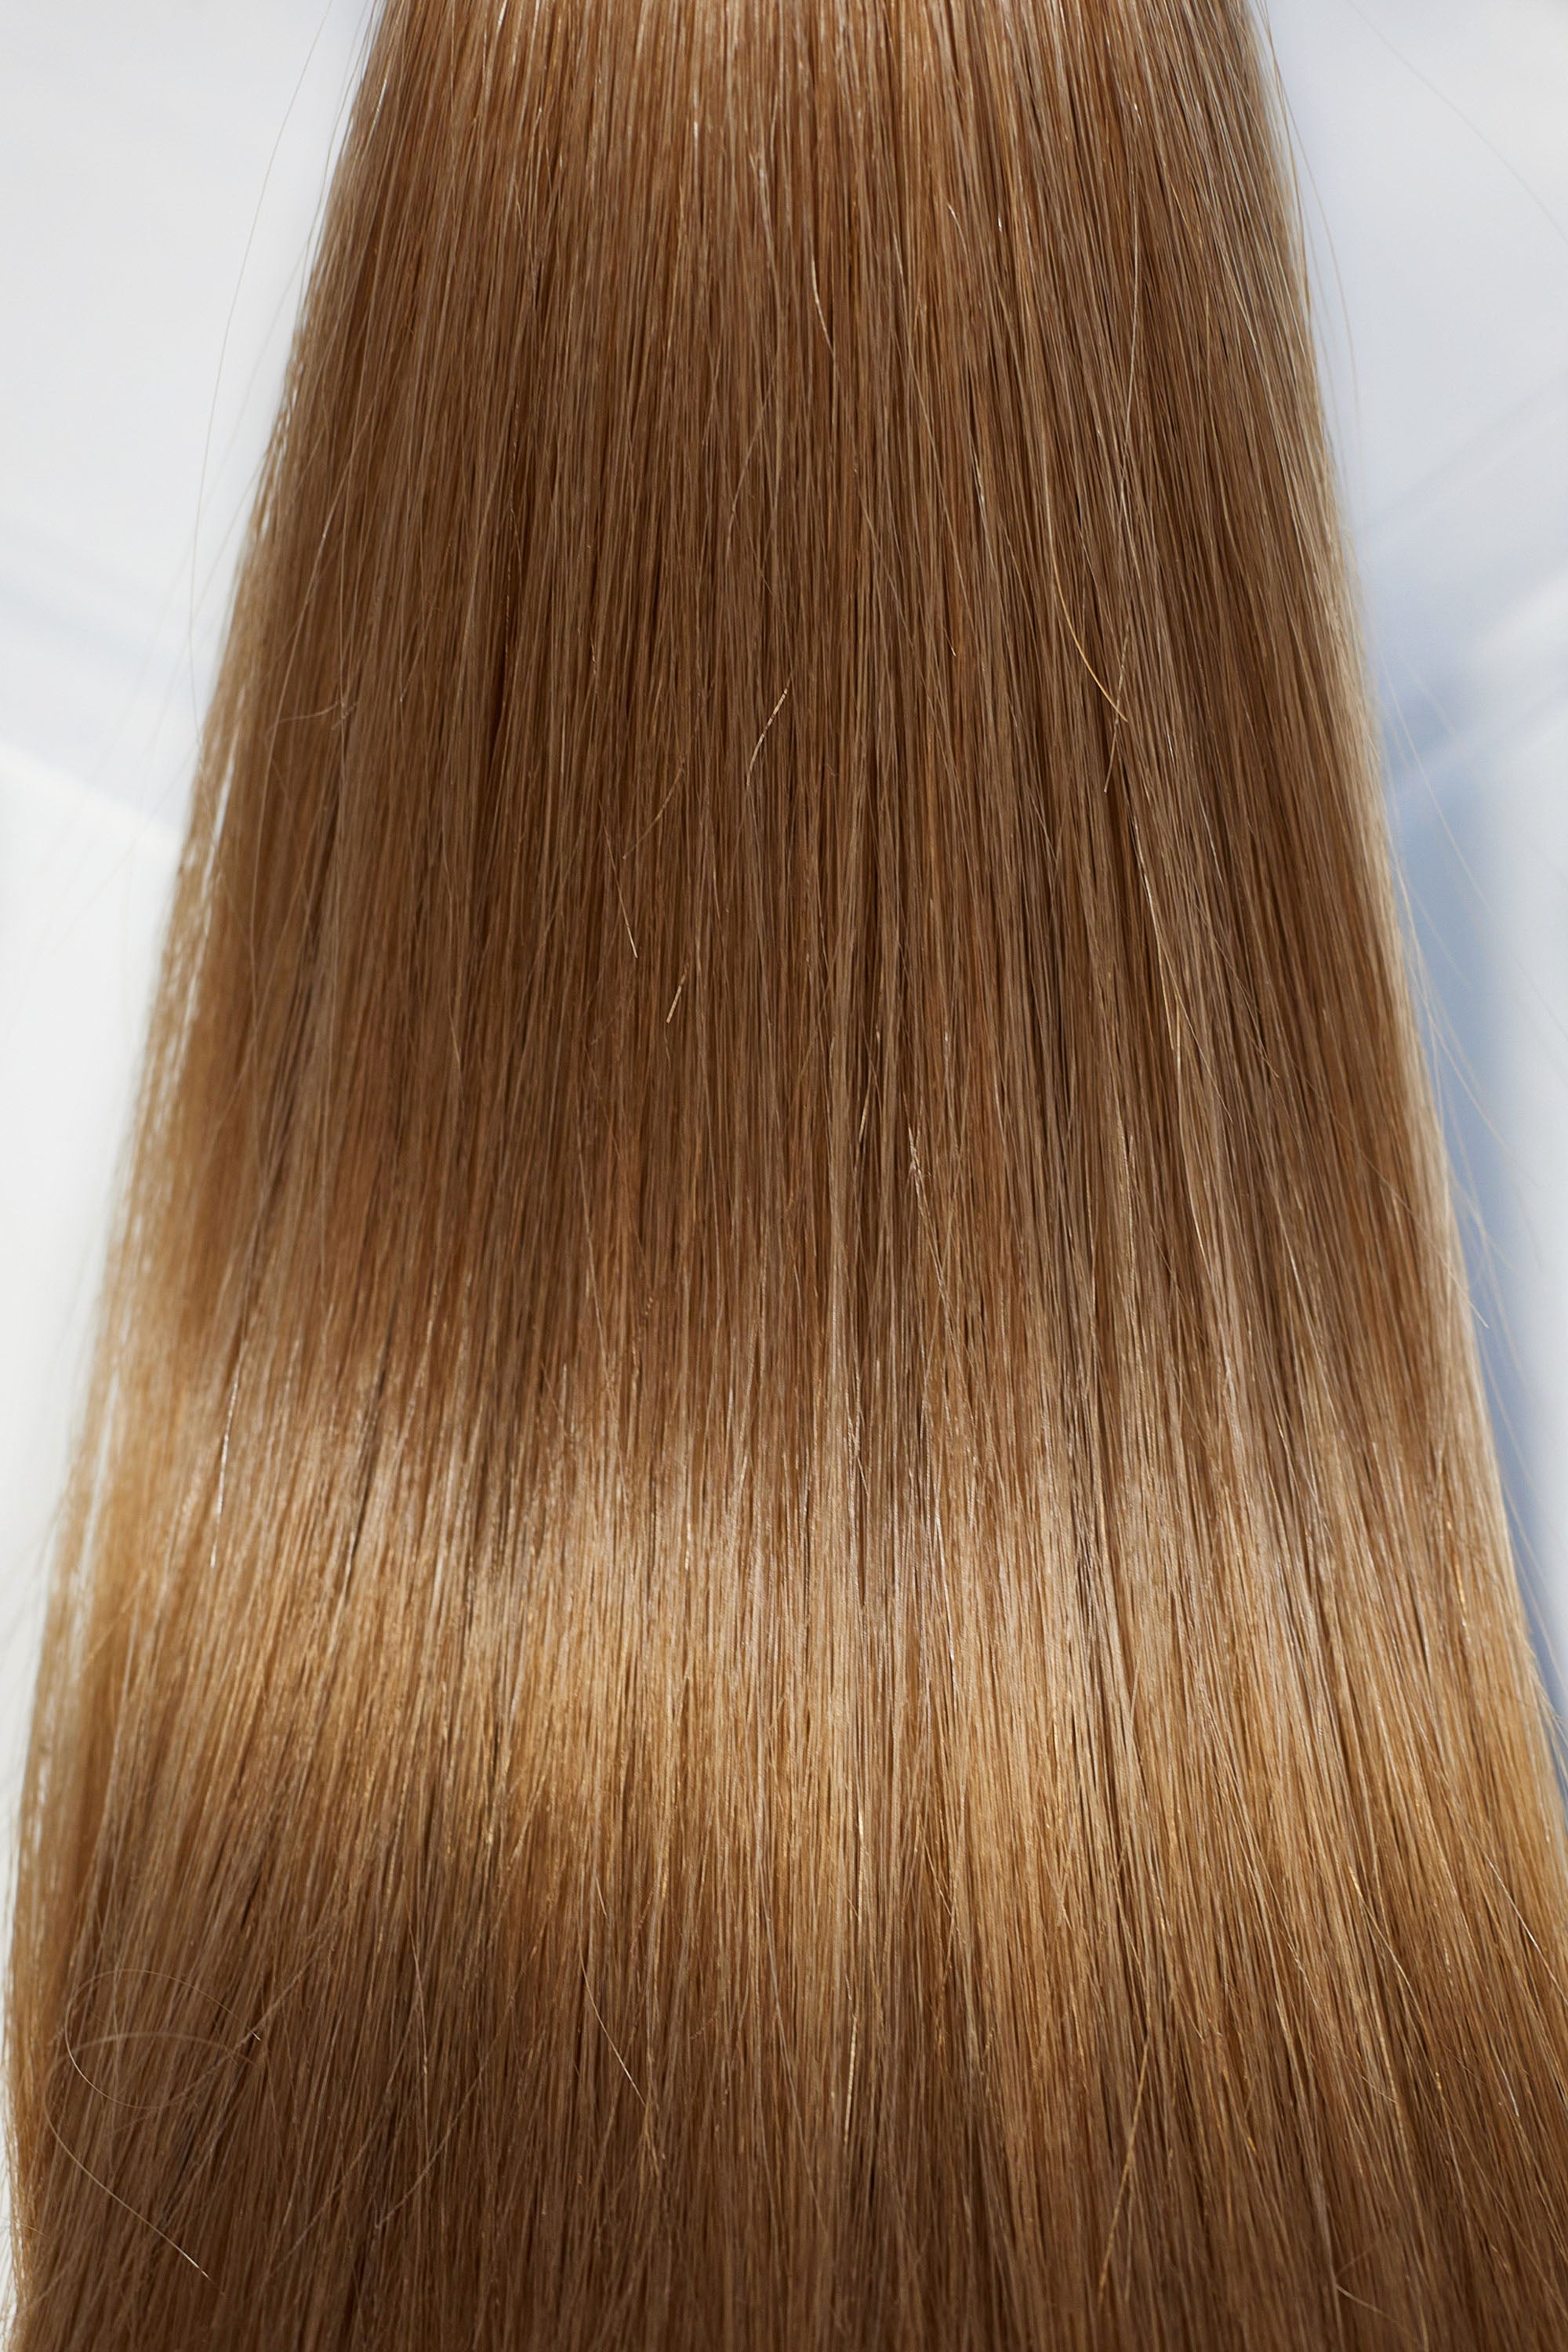 Behair professional Bulk hair "Premium" 20" (50cm) Natural Straight Caramel Brown #8 - 25g hair extensions